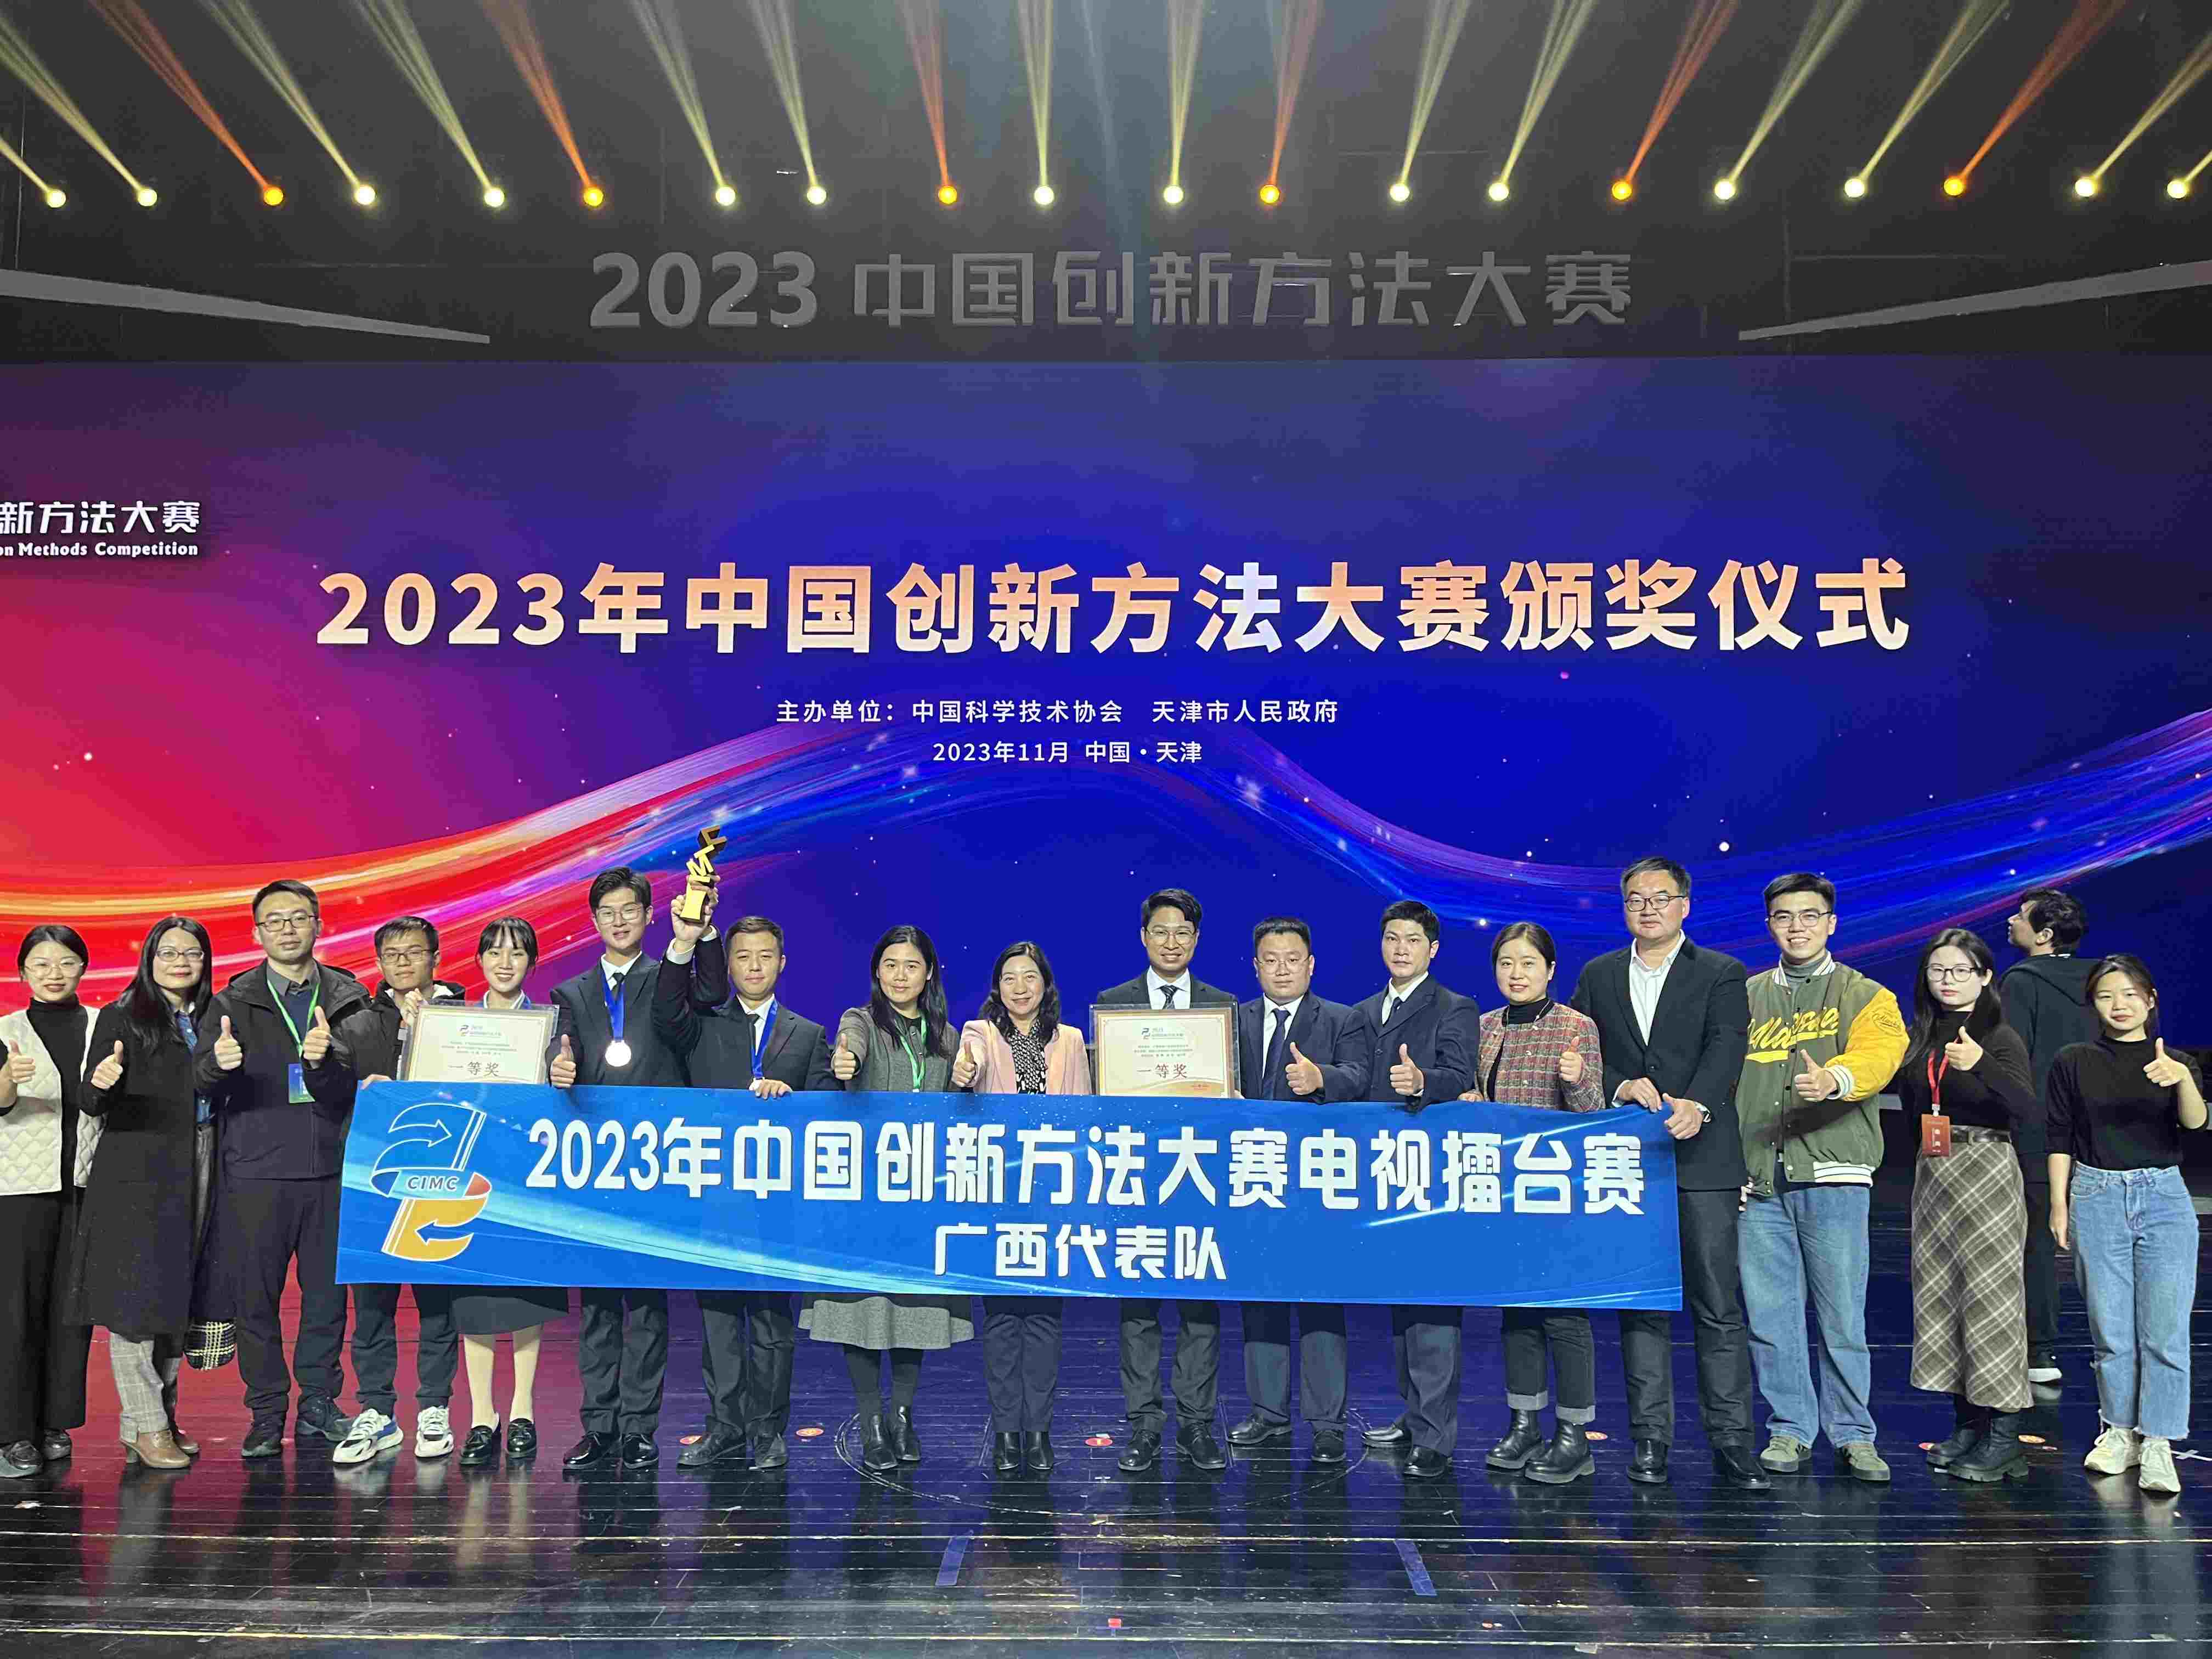 2023年中国创新方法大赛收官 广西创历史最好成绩